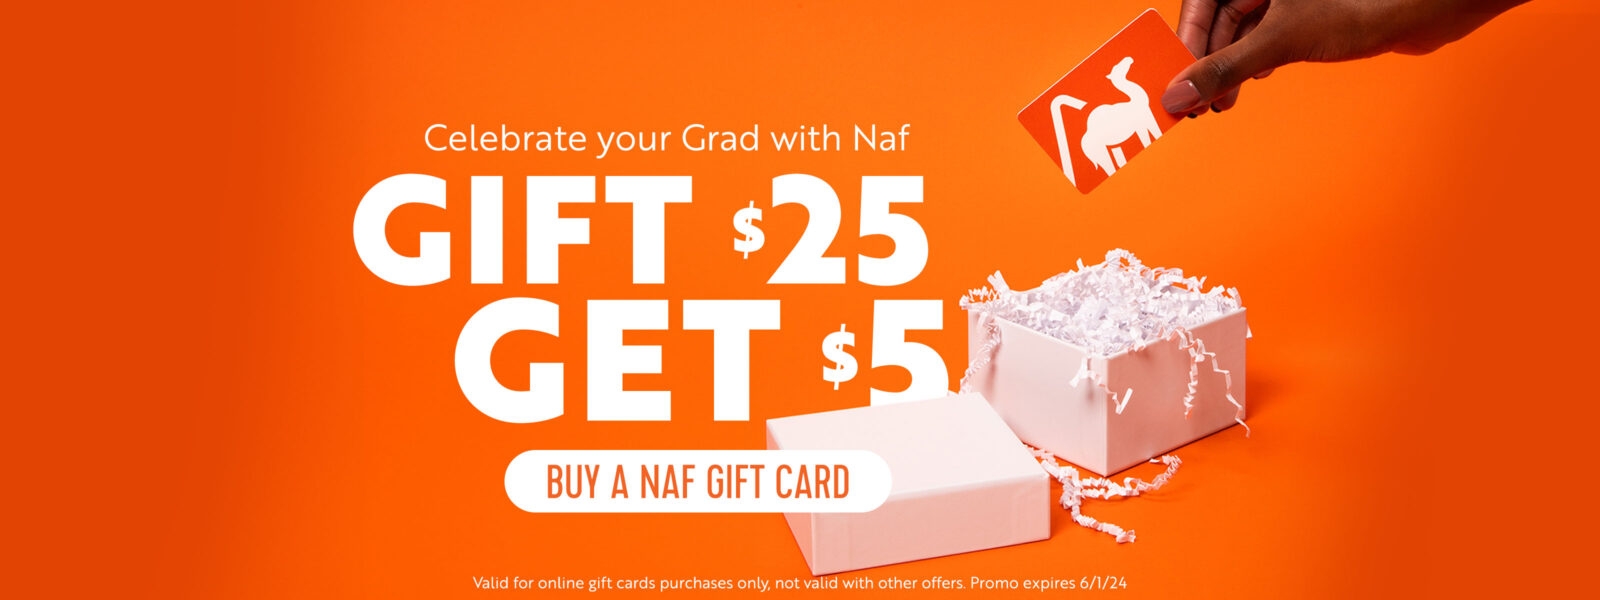 Buy $25 get $5 on Naf Gift Cards